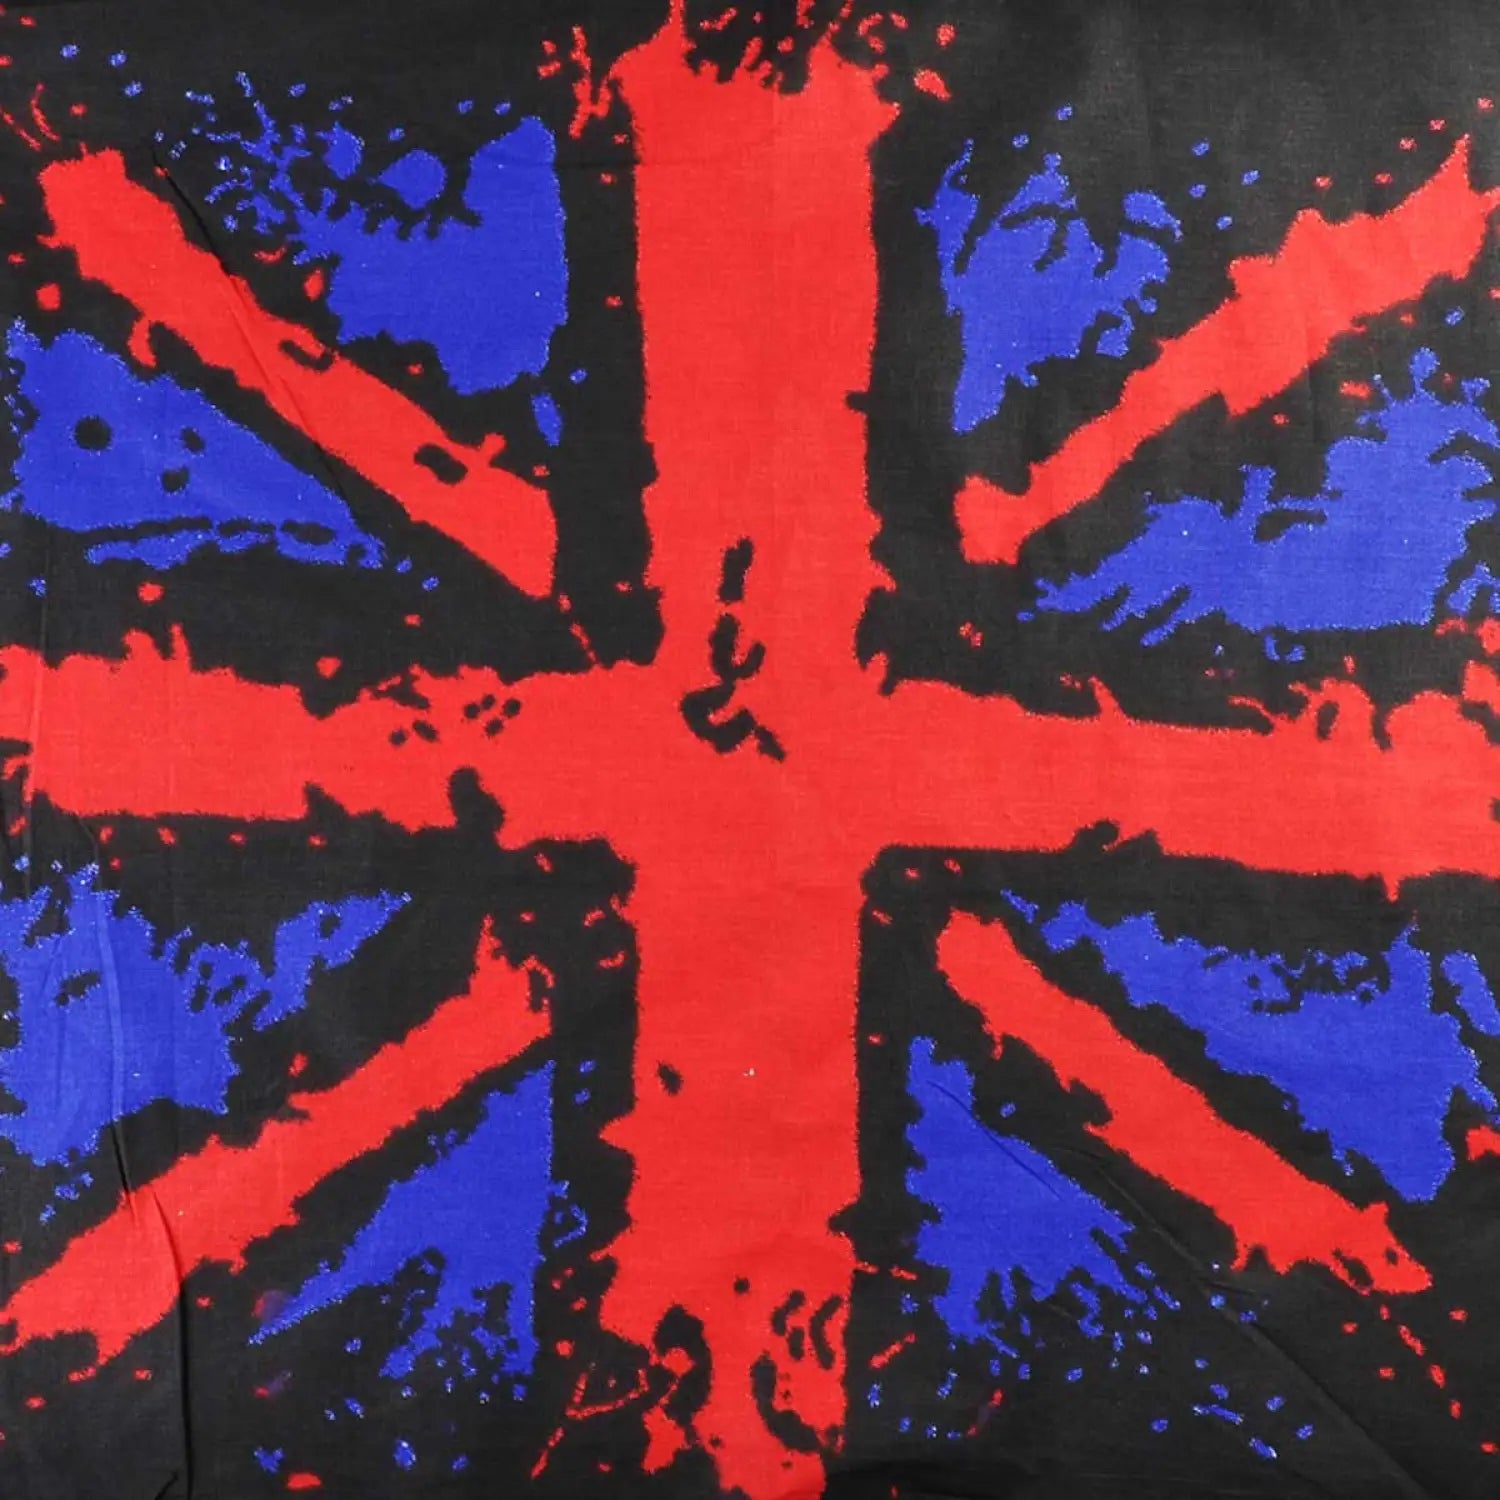 Union Jack Print Bandana - British Style Flag Design